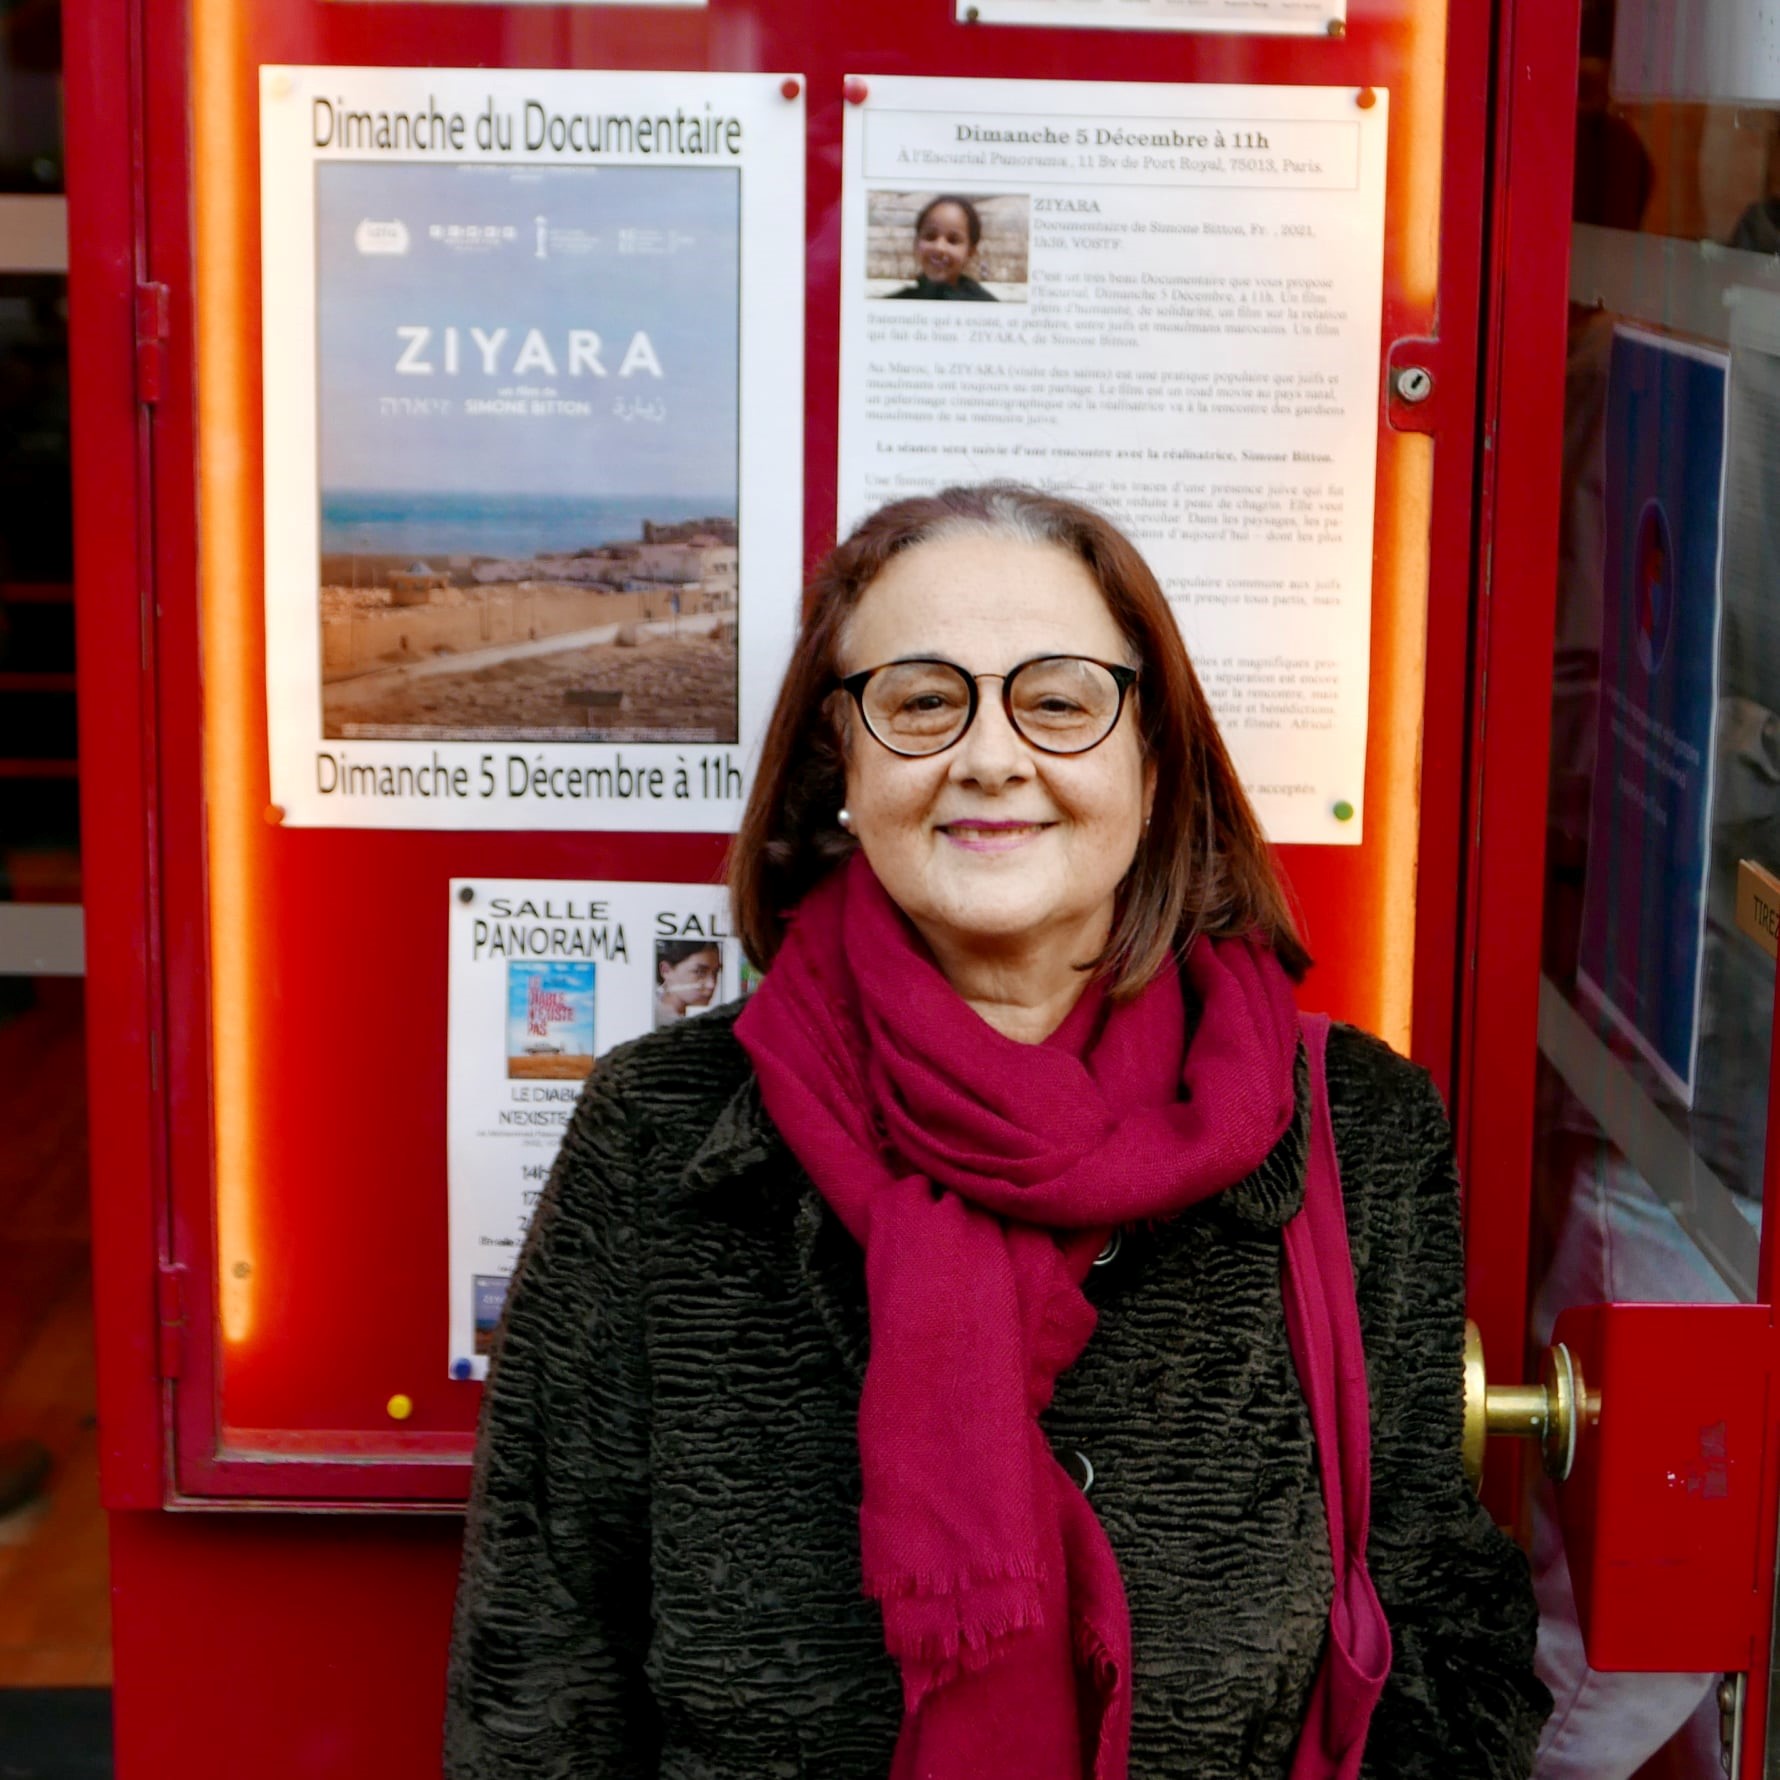 'זיארה': סרט חדש של הבמאית סימון ביטון על שורשים מרוקאים-יהודים